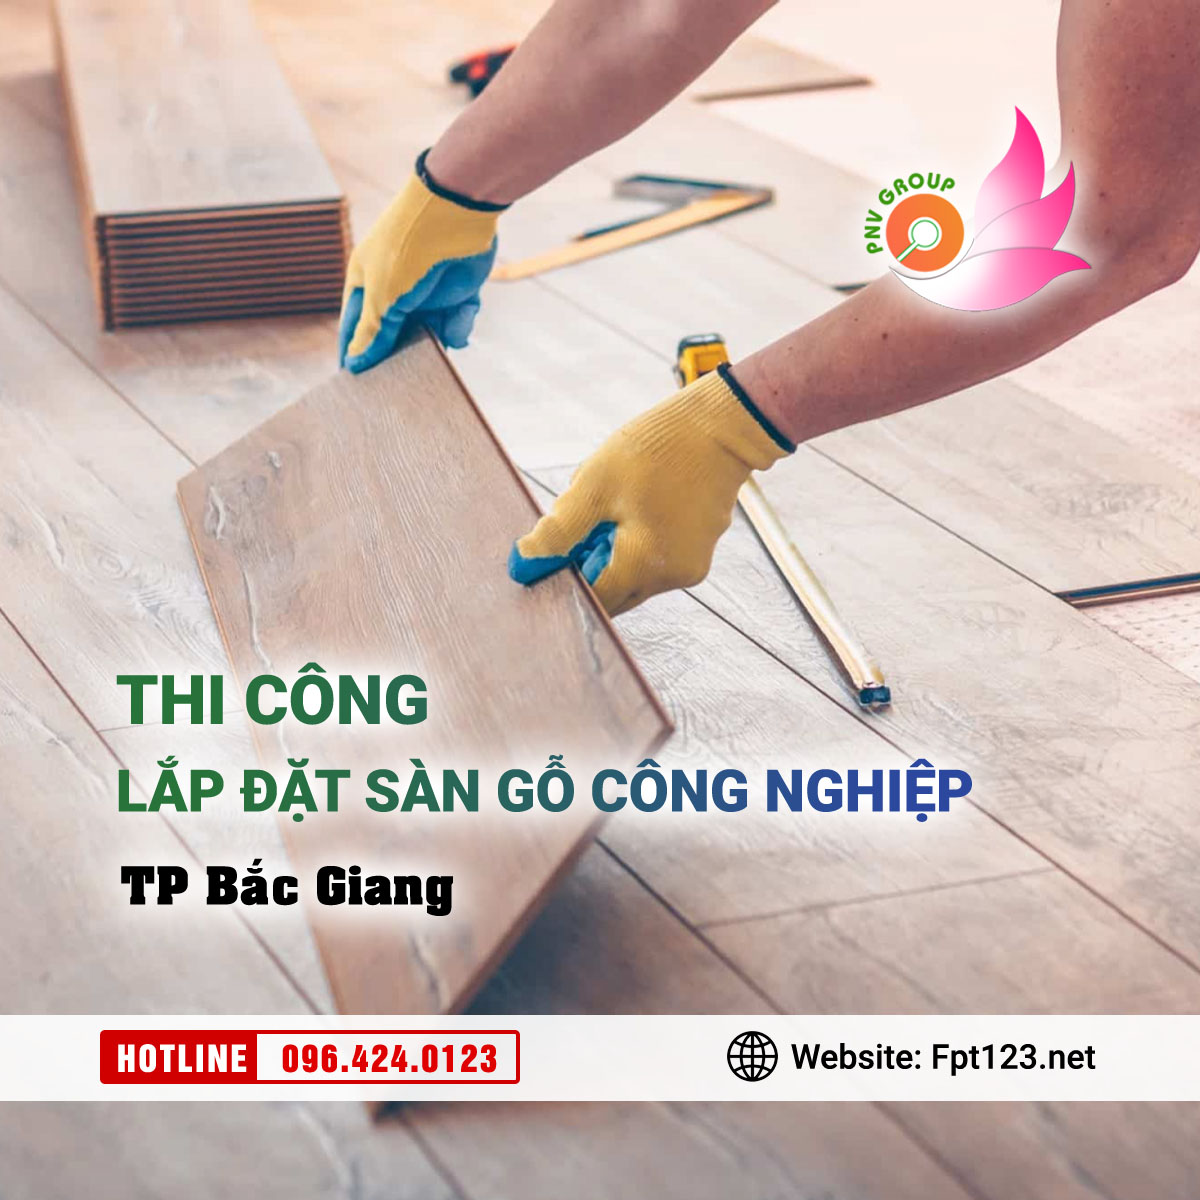 Lắp đặt sàn gỗ công nghiệp tại thành phố Bắc Giang